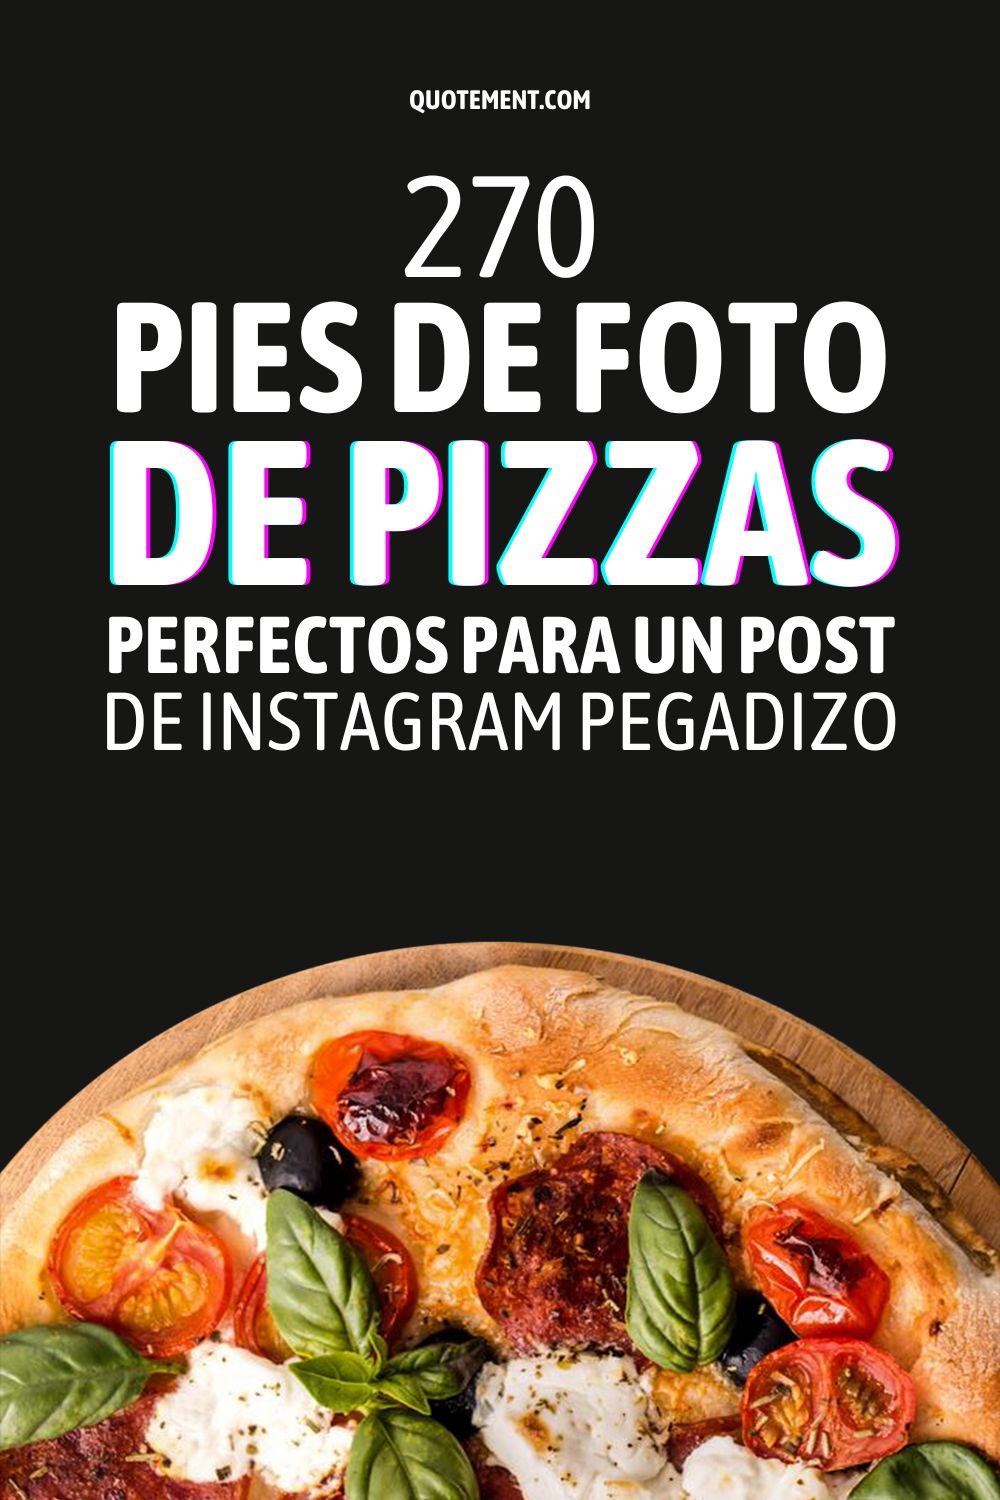 270 pies de foto de pizzas perfectos para un post de Instagram pegadizo